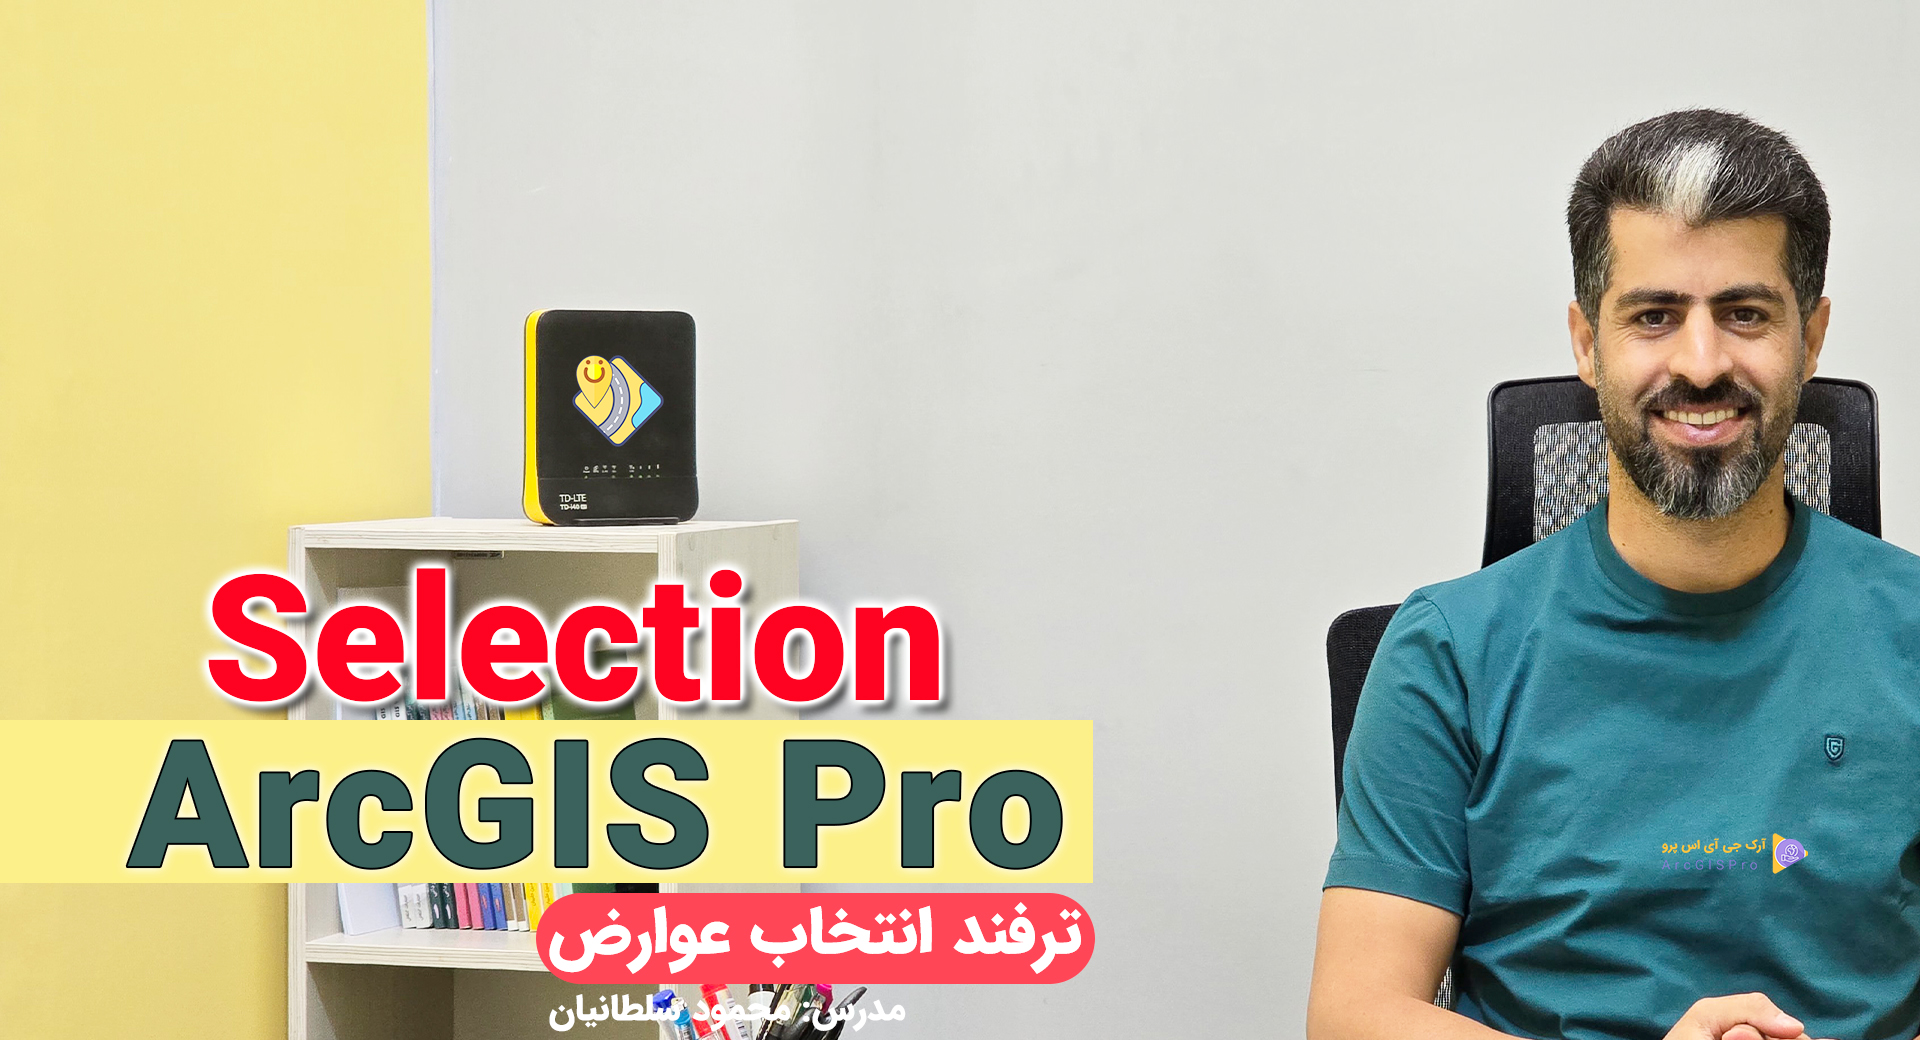 رفع خطای انتخاب عوارض در ArcGIS Pro محمود سلطانیان